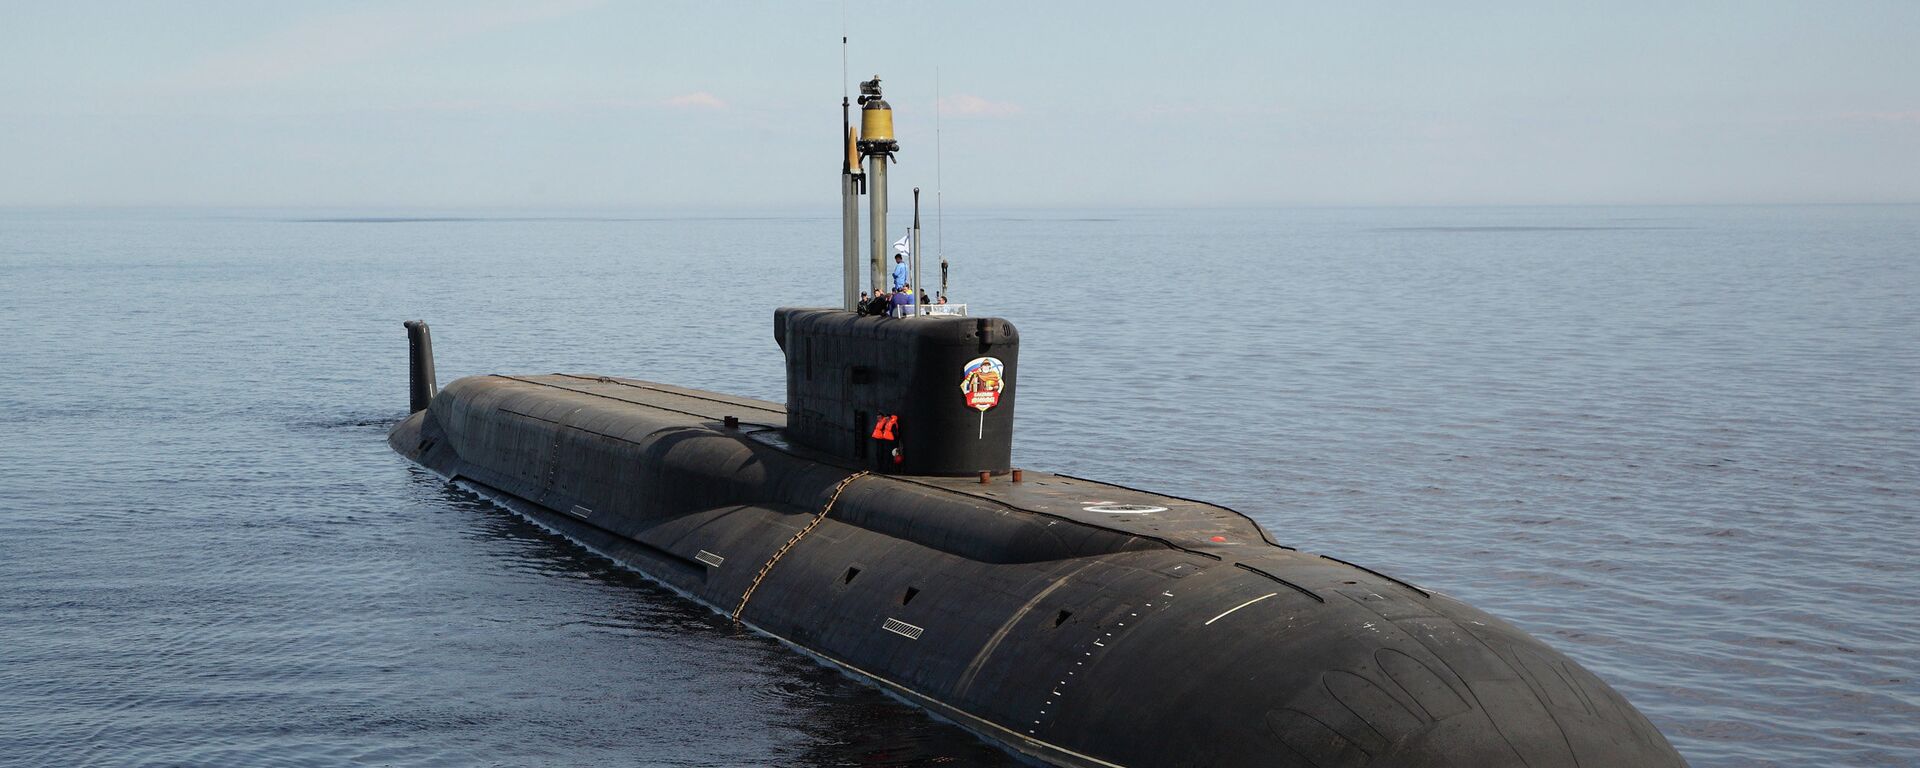 ロシアの原子力潜水艦K-551「ウラジミール・モノマフ」 - Sputnik 日本, 1920, 19.06.2022